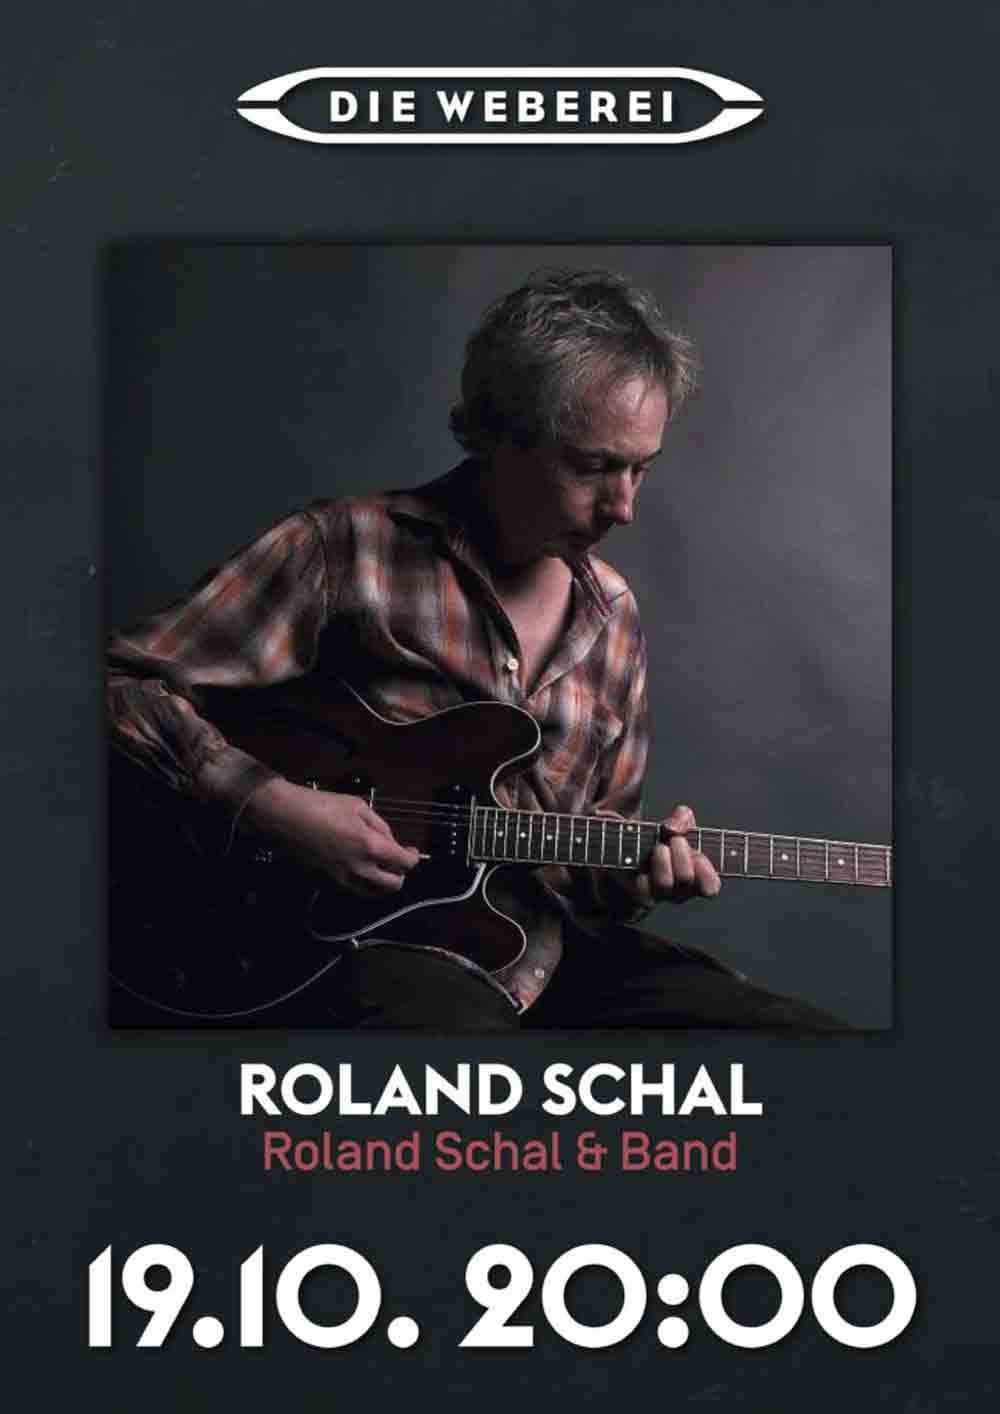 Roland Schal & Band – featuring Wolfgang Roggenkamp in der Weberei Gütersloh